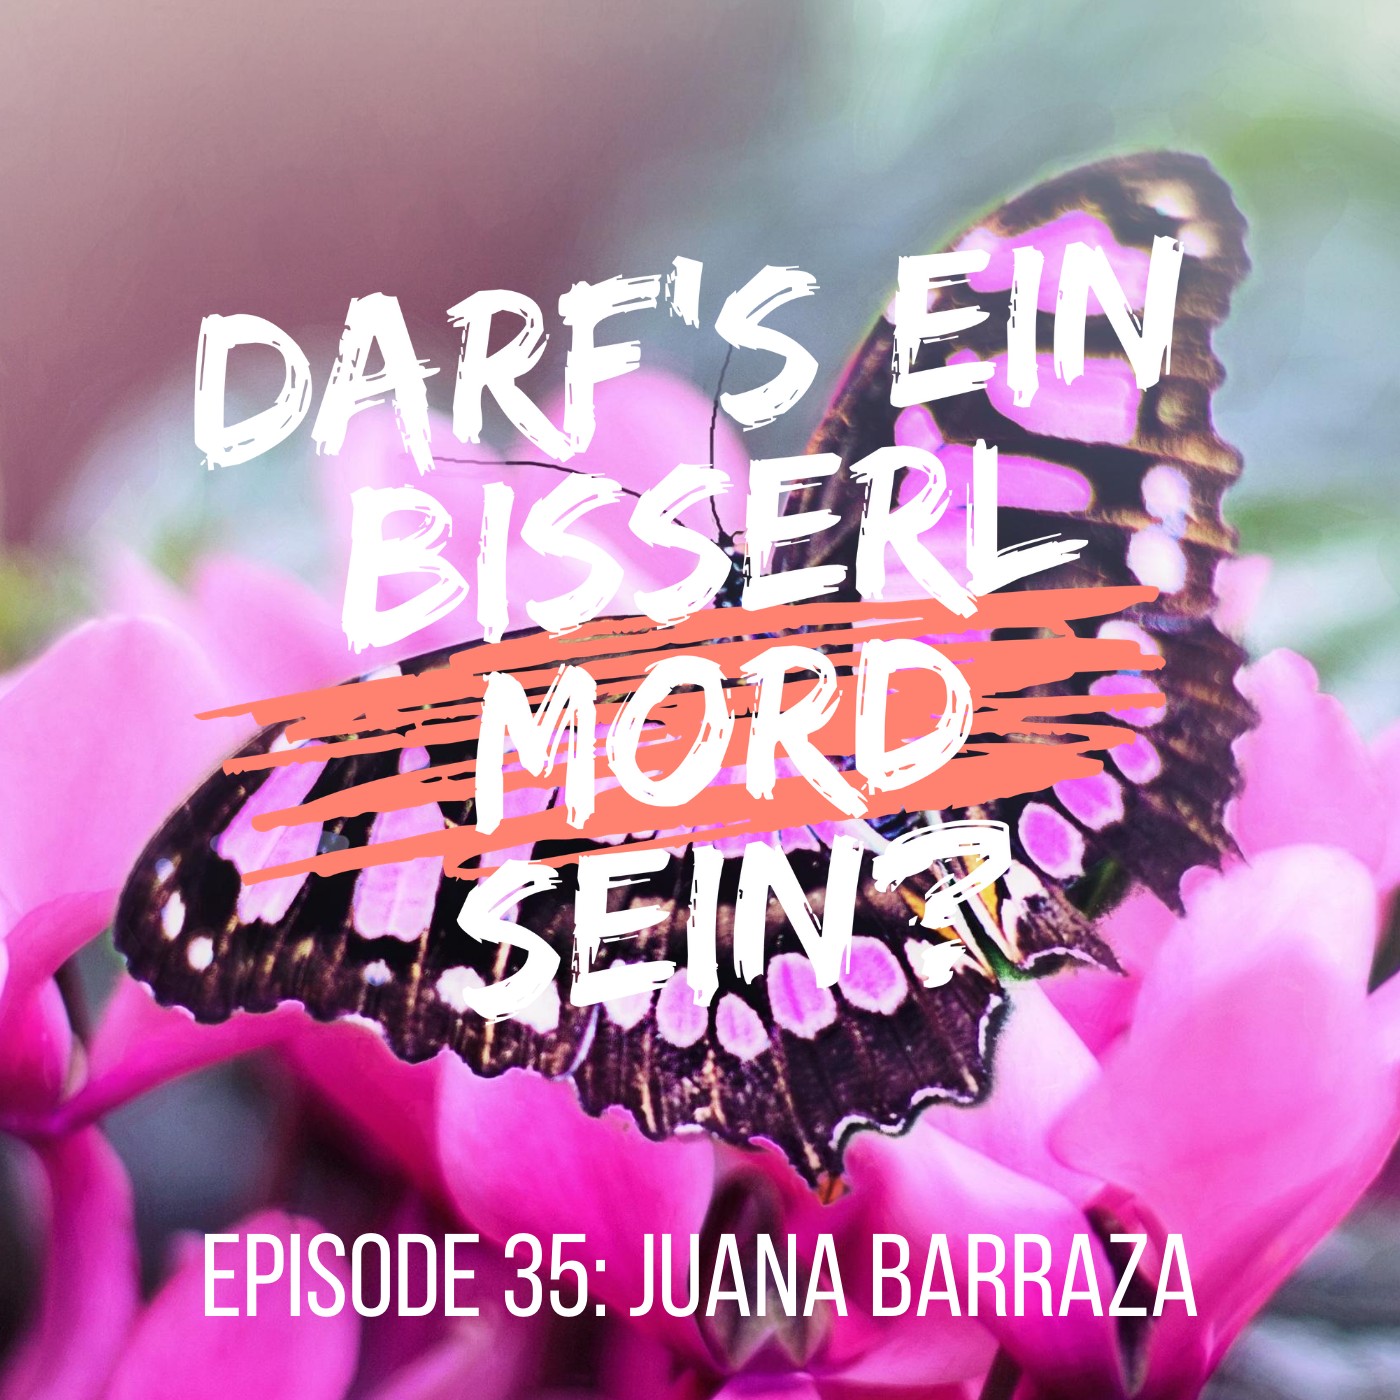 Episode 35: Juana Barraza